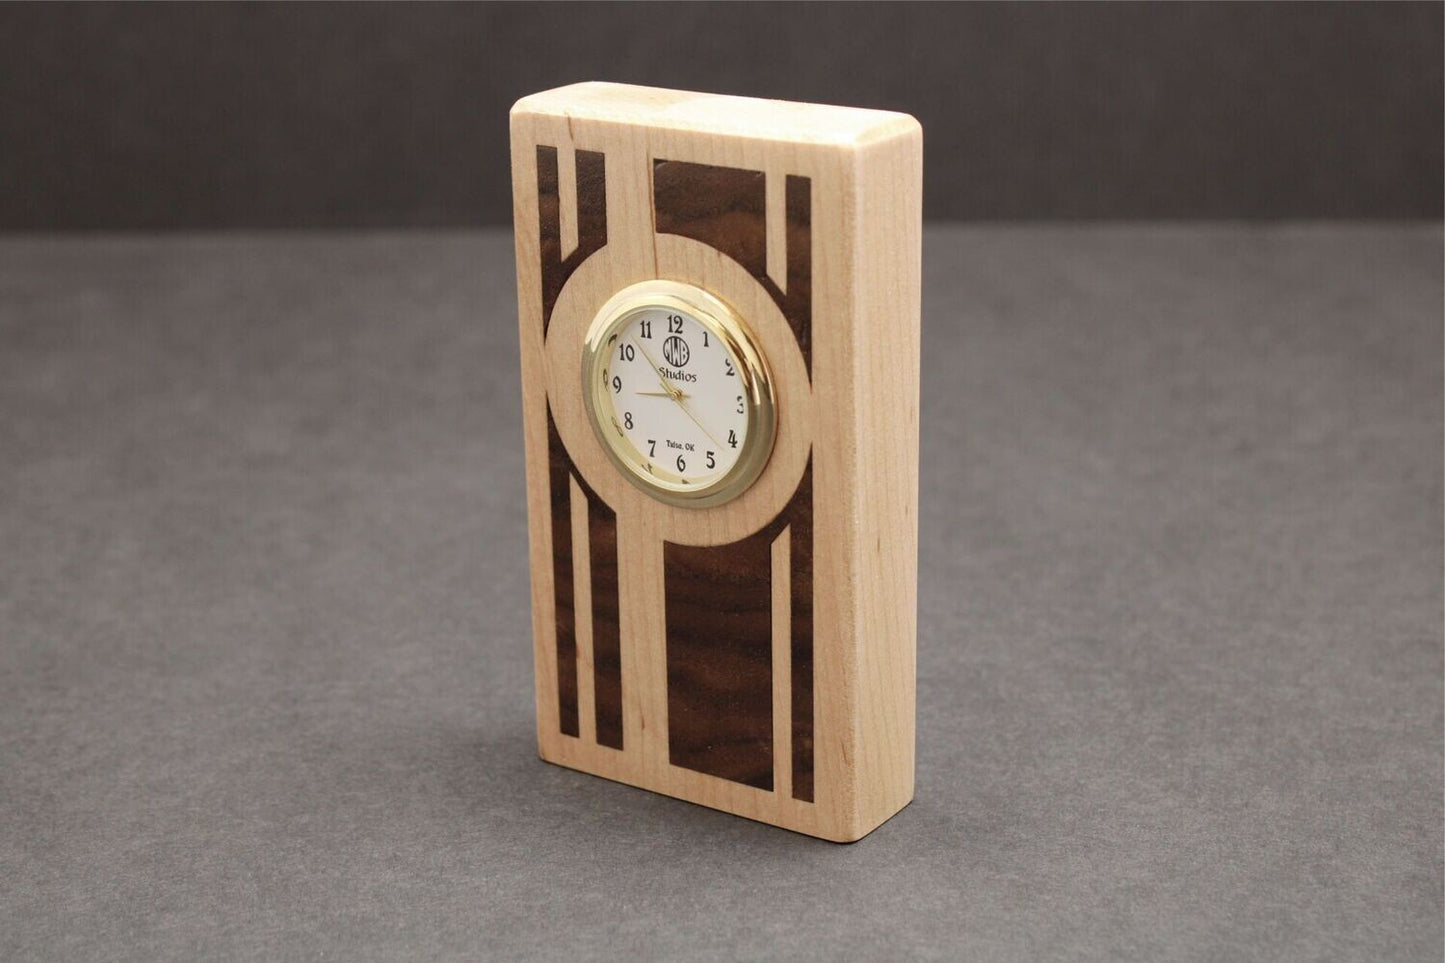 Inlaid Miniature Desk Clock.  MDC-3.   Made in the U.S.